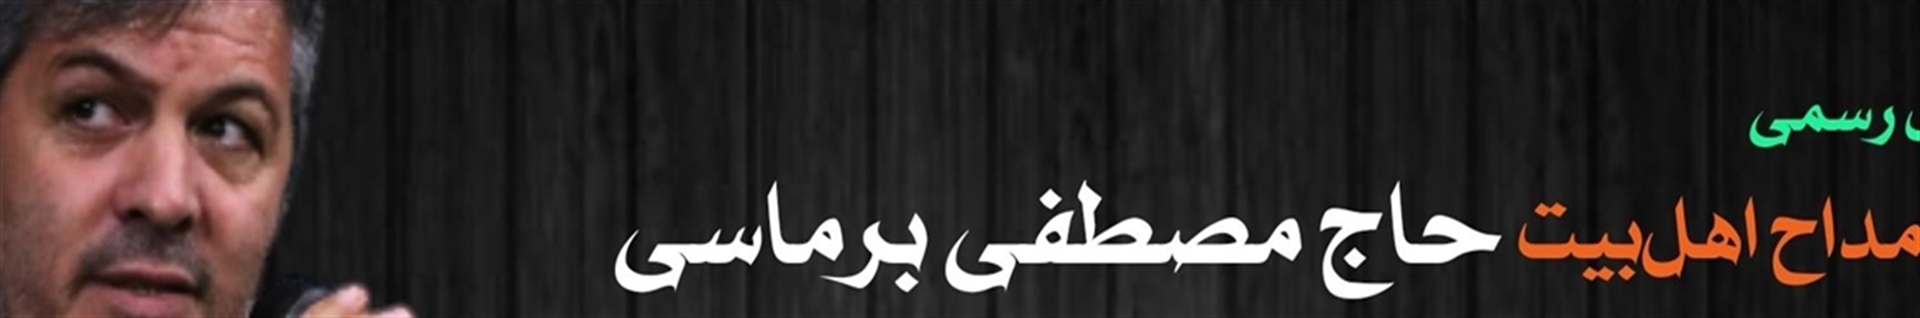 هواداران حاج مصطفی برماسی